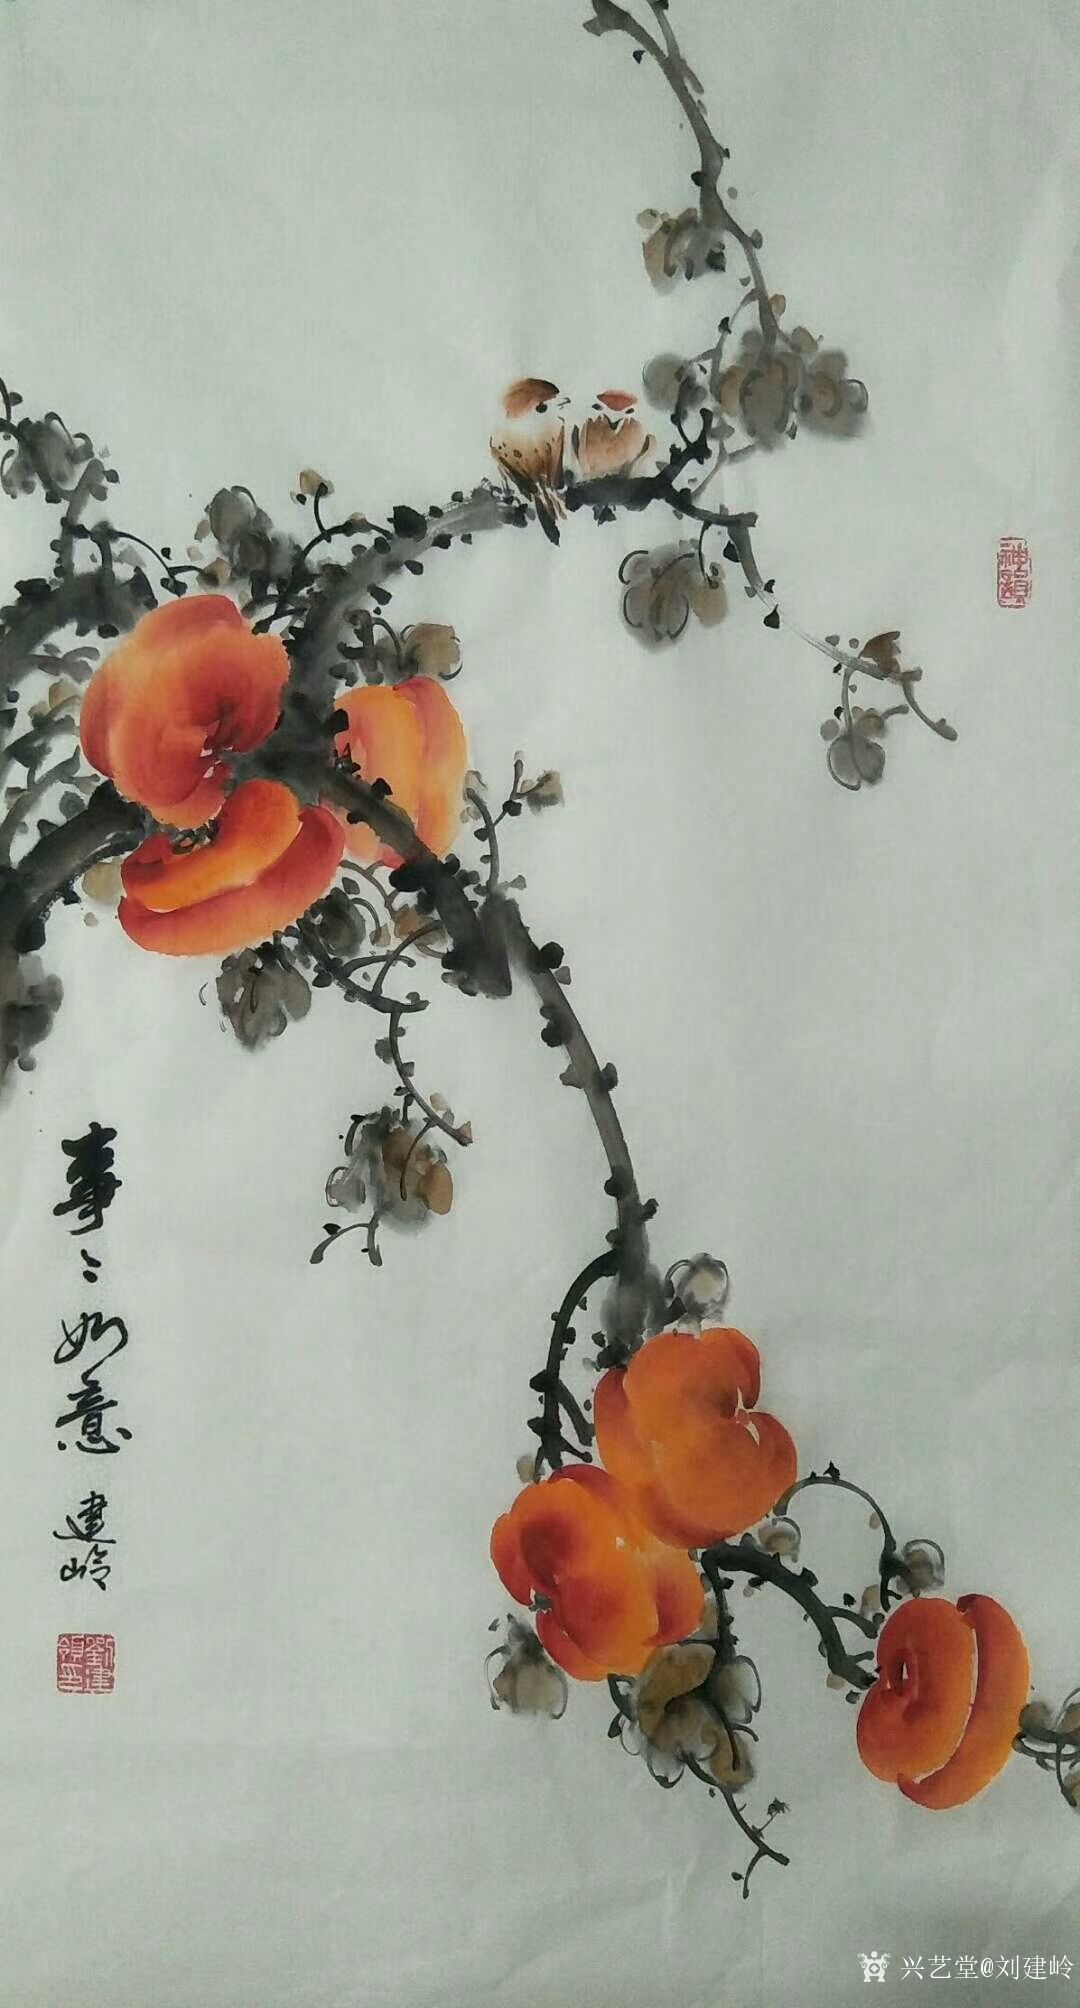 刘建岭日记-国画花鸟画柿子系列作品《事事如意》,三幅,尺寸四尺三裁